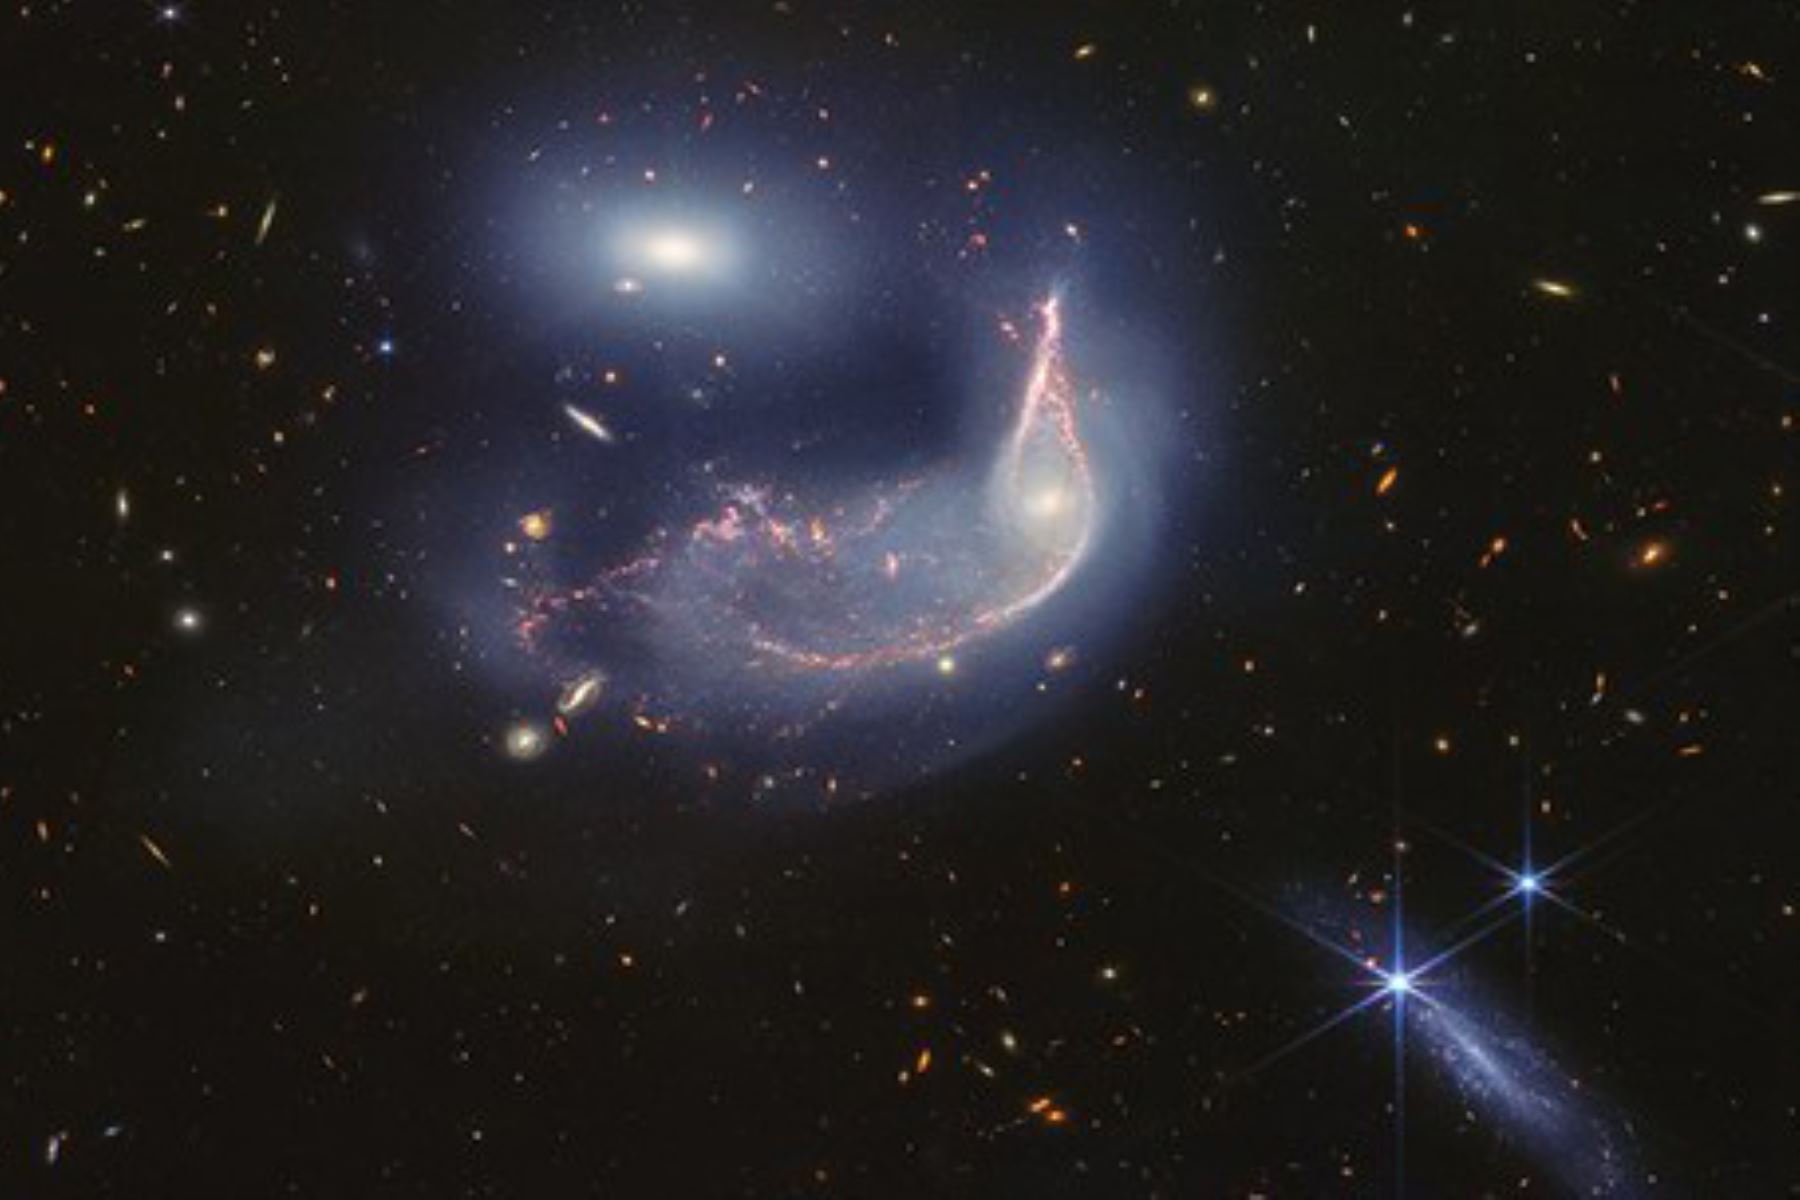 Esta nueva imagen de Webb muestra dos galaxias: un pingüino (NGC 2936) custodiando un huevo (NGC 2937). Las observaciones de Webb revelan que los dos están en un abrazo cósmico, unidos por una neblina azul de estrellas y gas. Foto: @NASAWebb